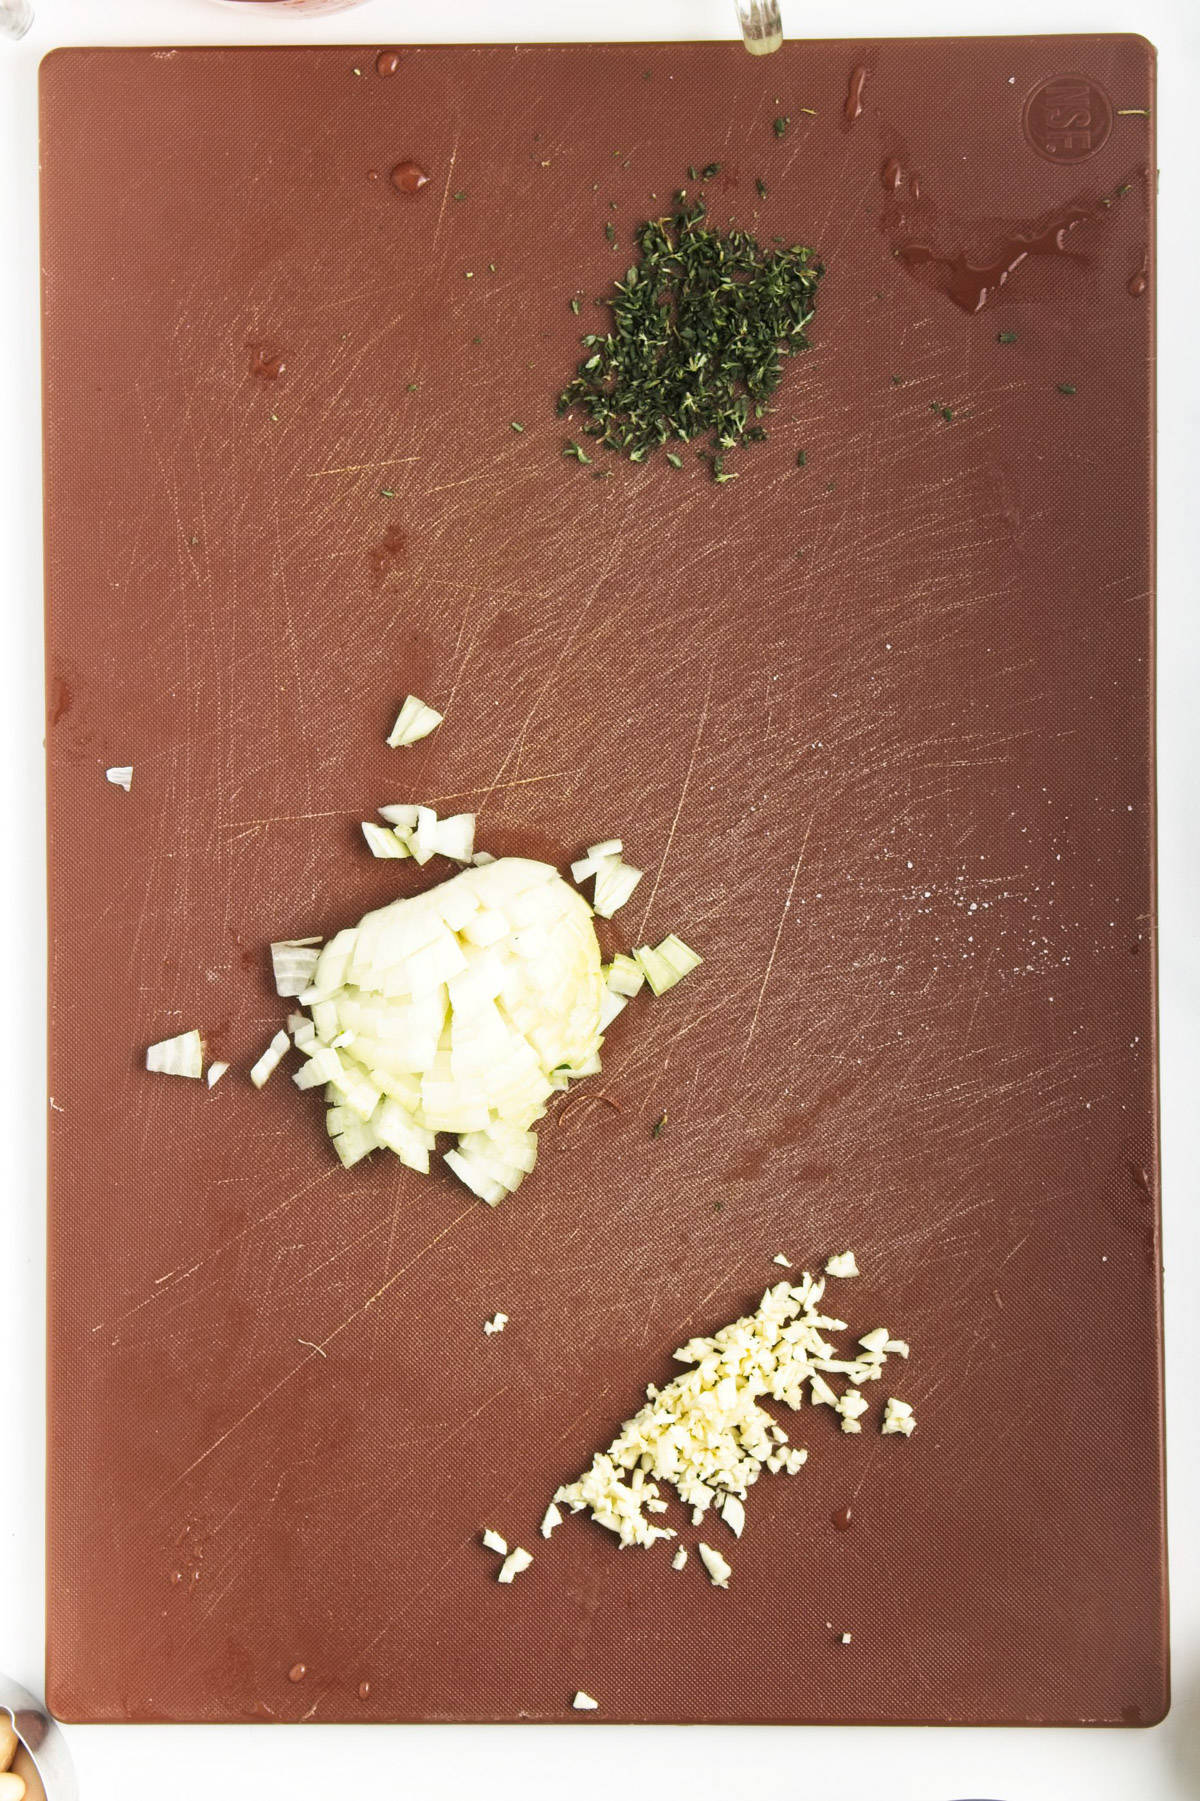 Onion, garlic and thyme chopped on a cutting board.